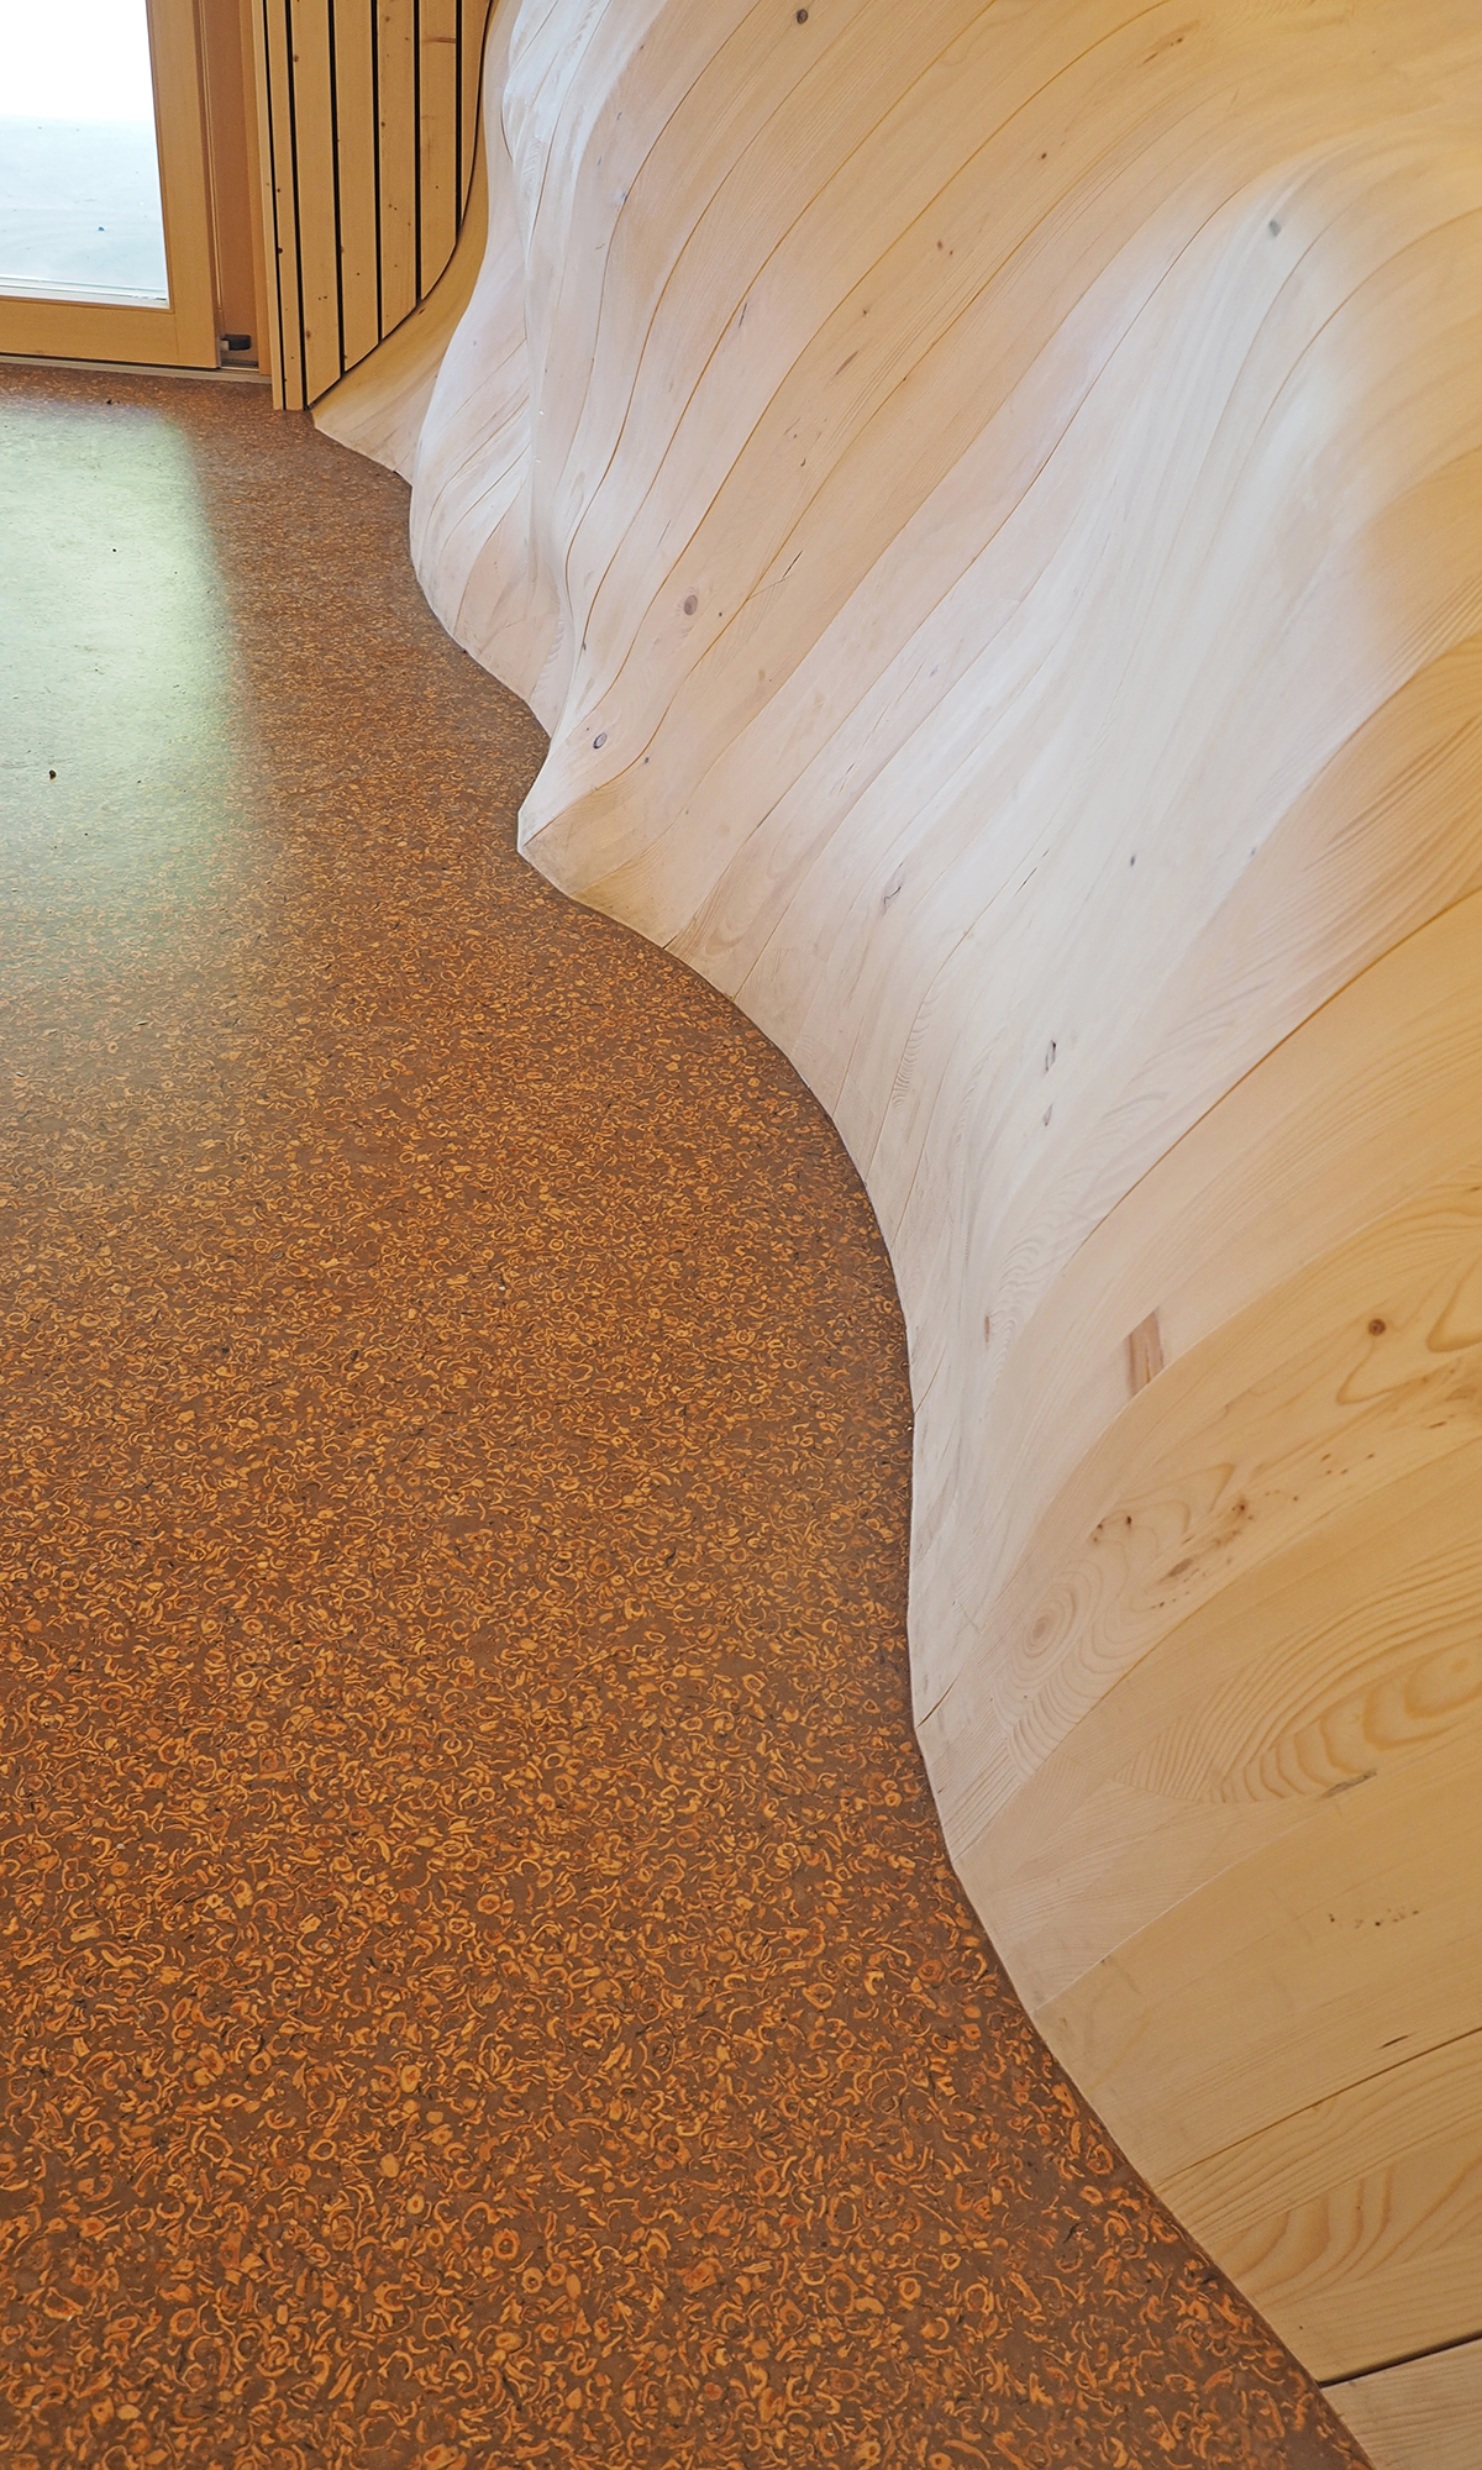 Seitenwände aus vielen einzigartig geformten Holzbauteilen und Fussboden, dessen Material Nussschalen enthält.